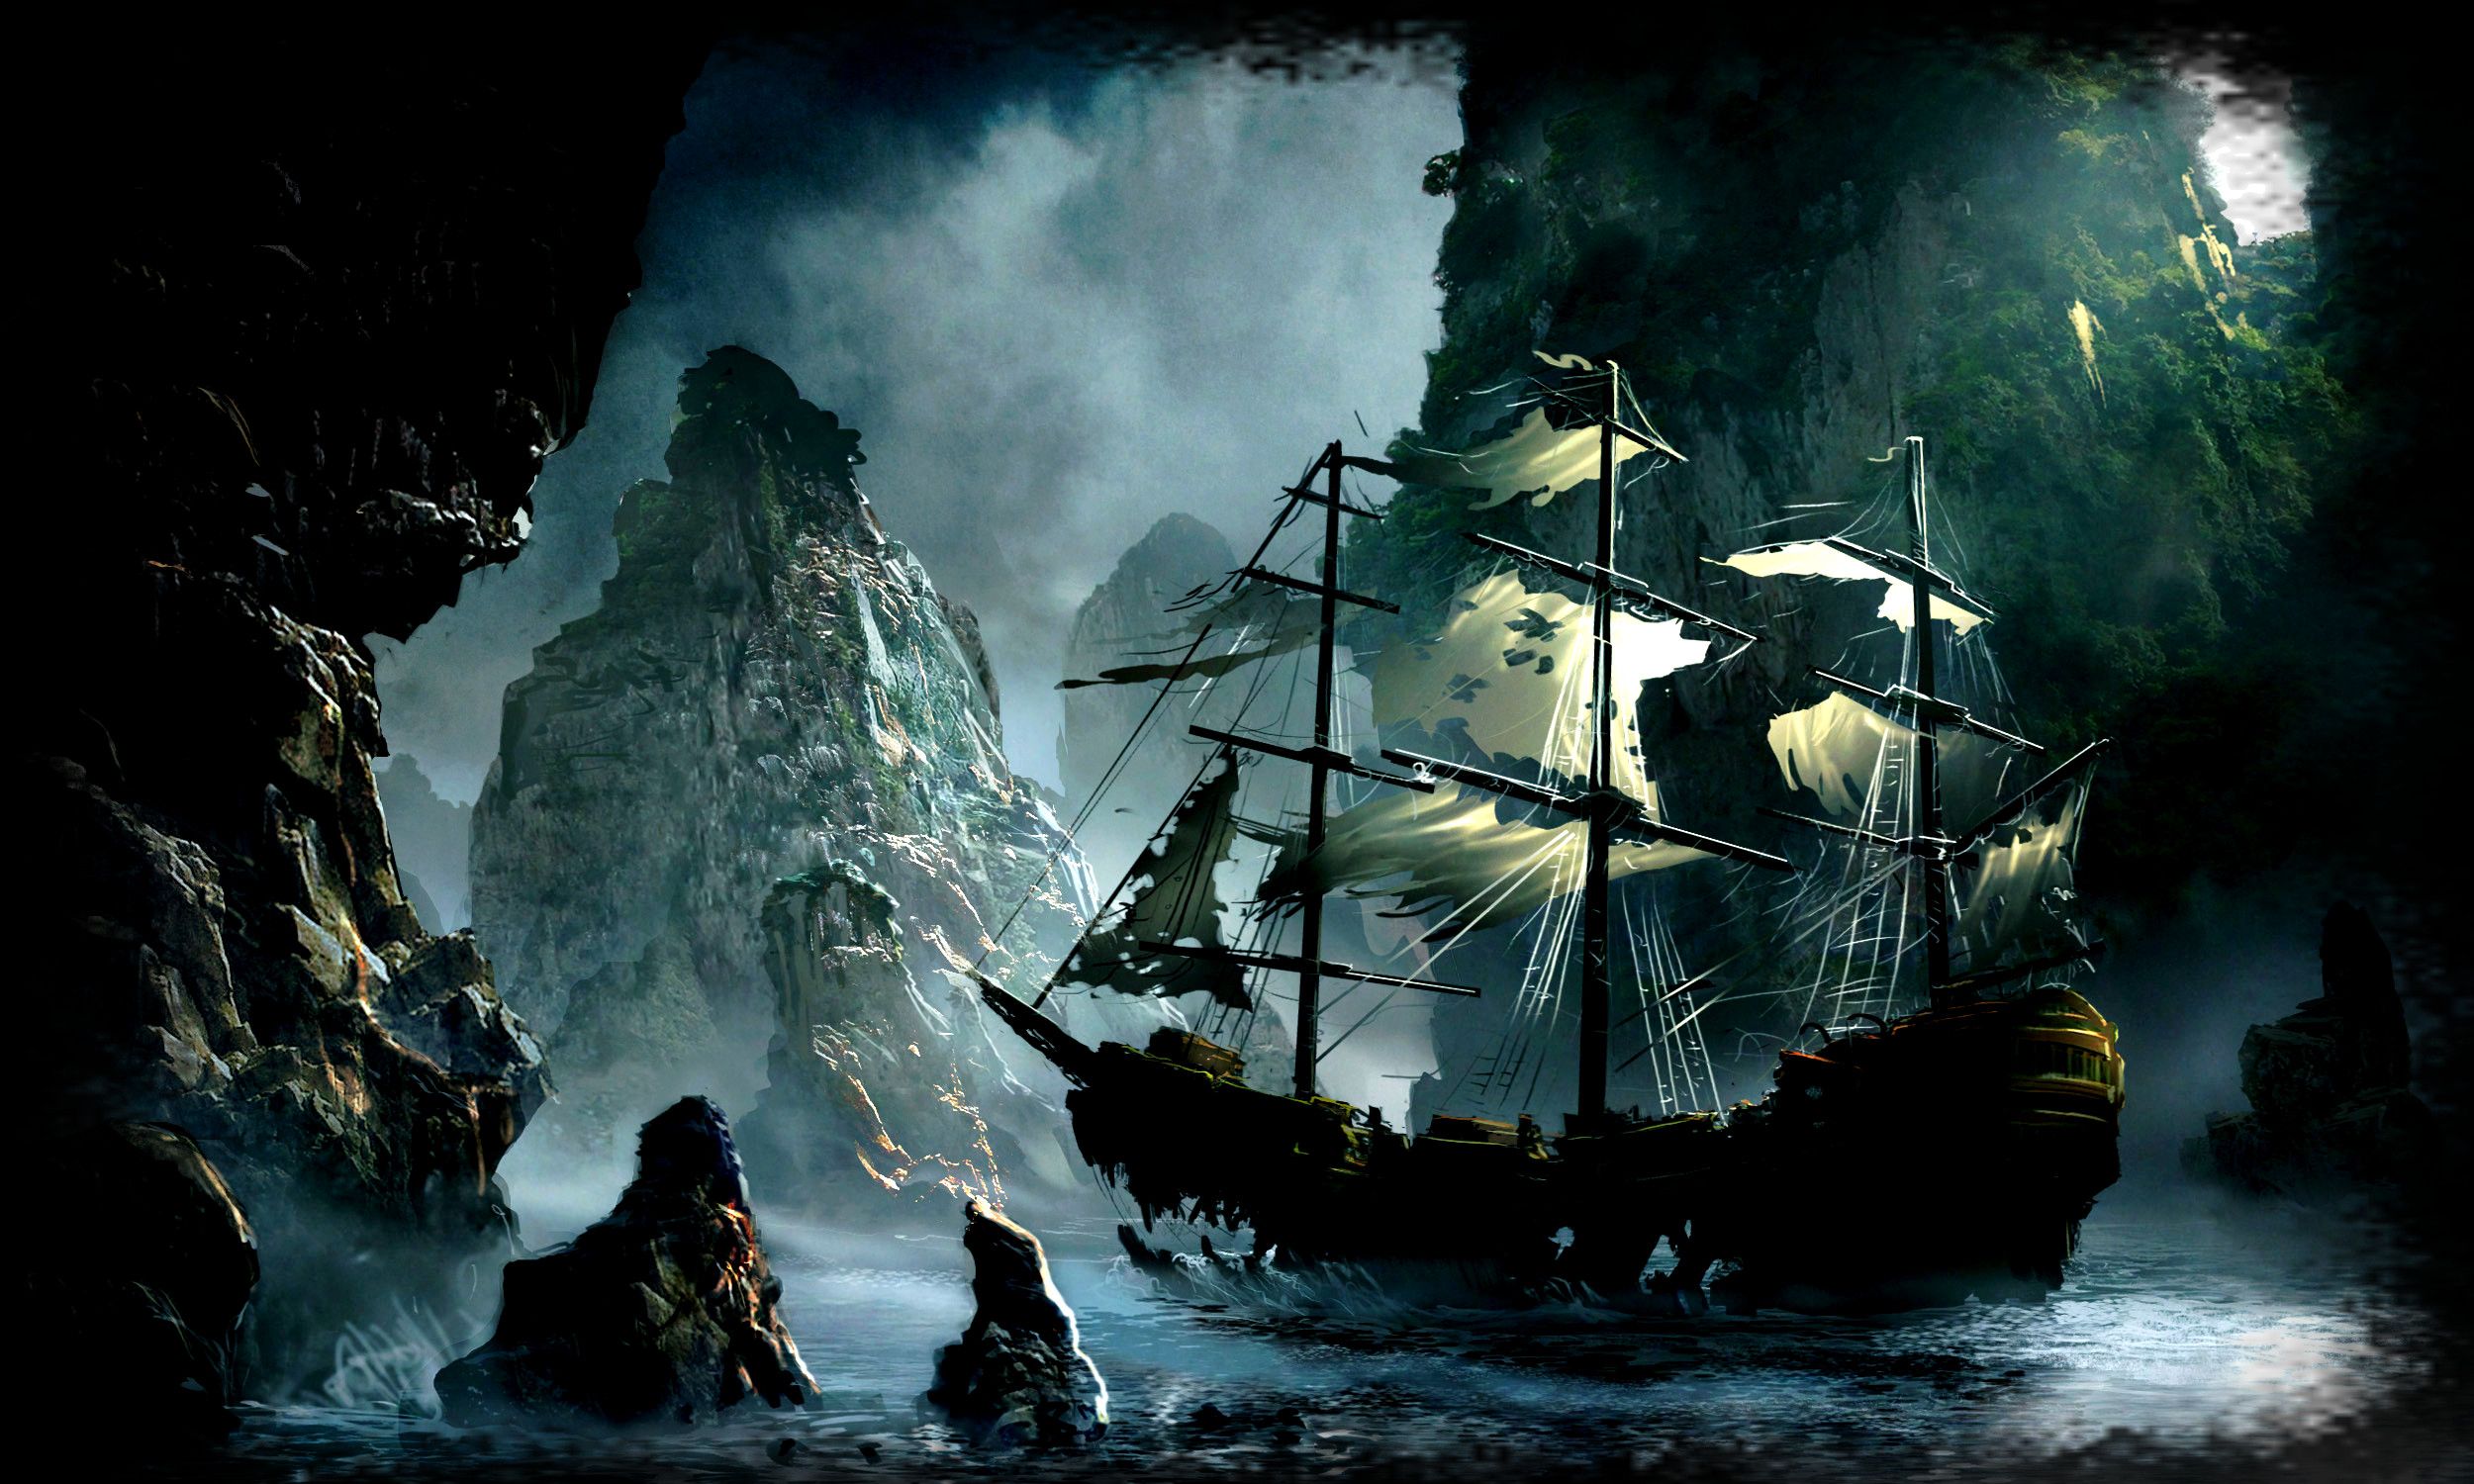 والپیپر جالب توجه لپتاپ با نقاشی کشتی متلاشی بر اثر طوفان